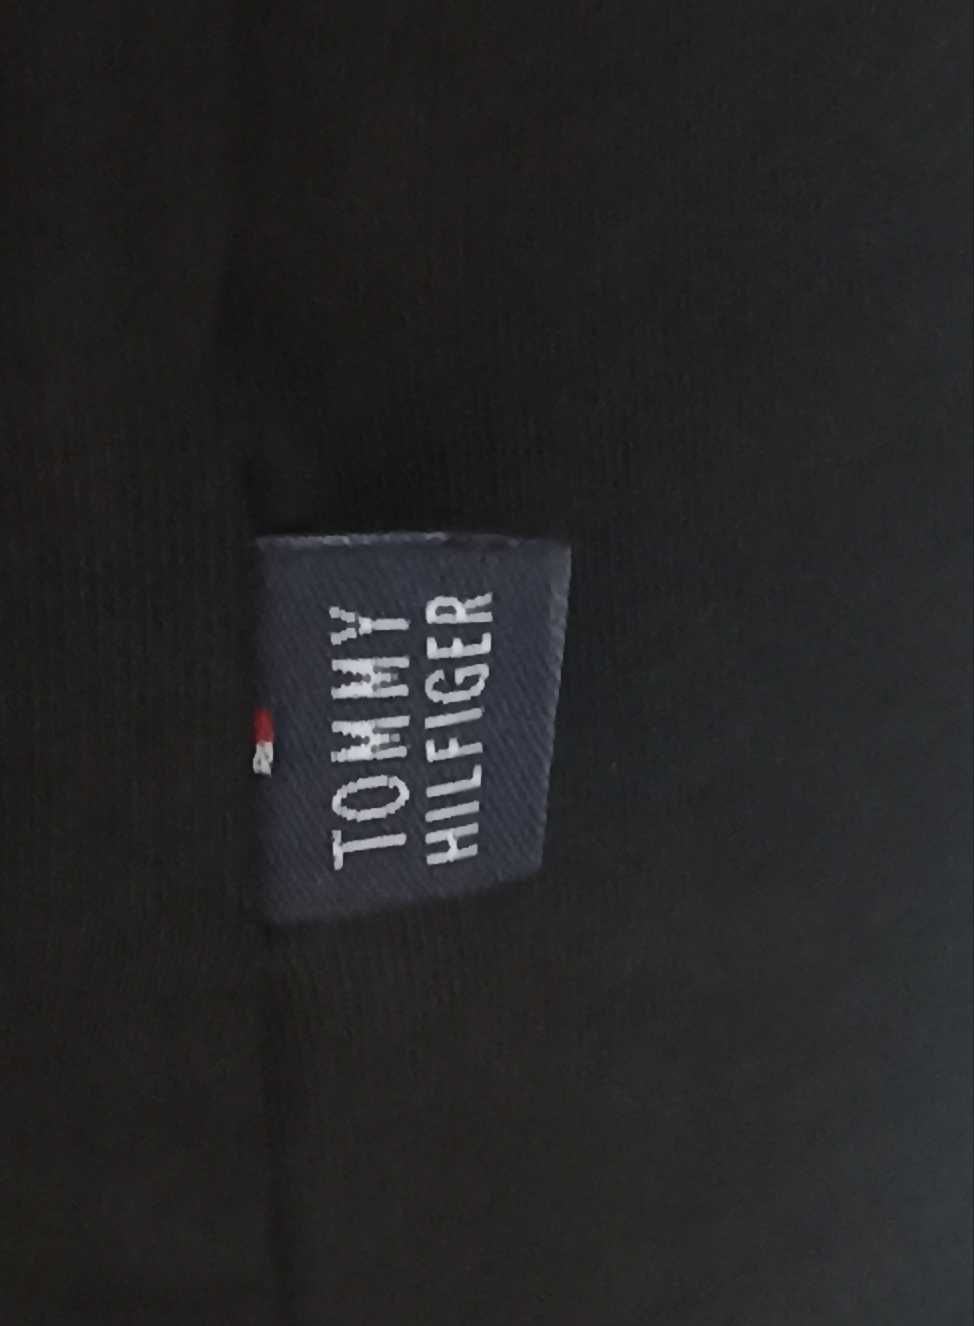 TOMMY HILFIGER T-shirt Koszulka Czarna roz. M,L,XL,XXL,3XL